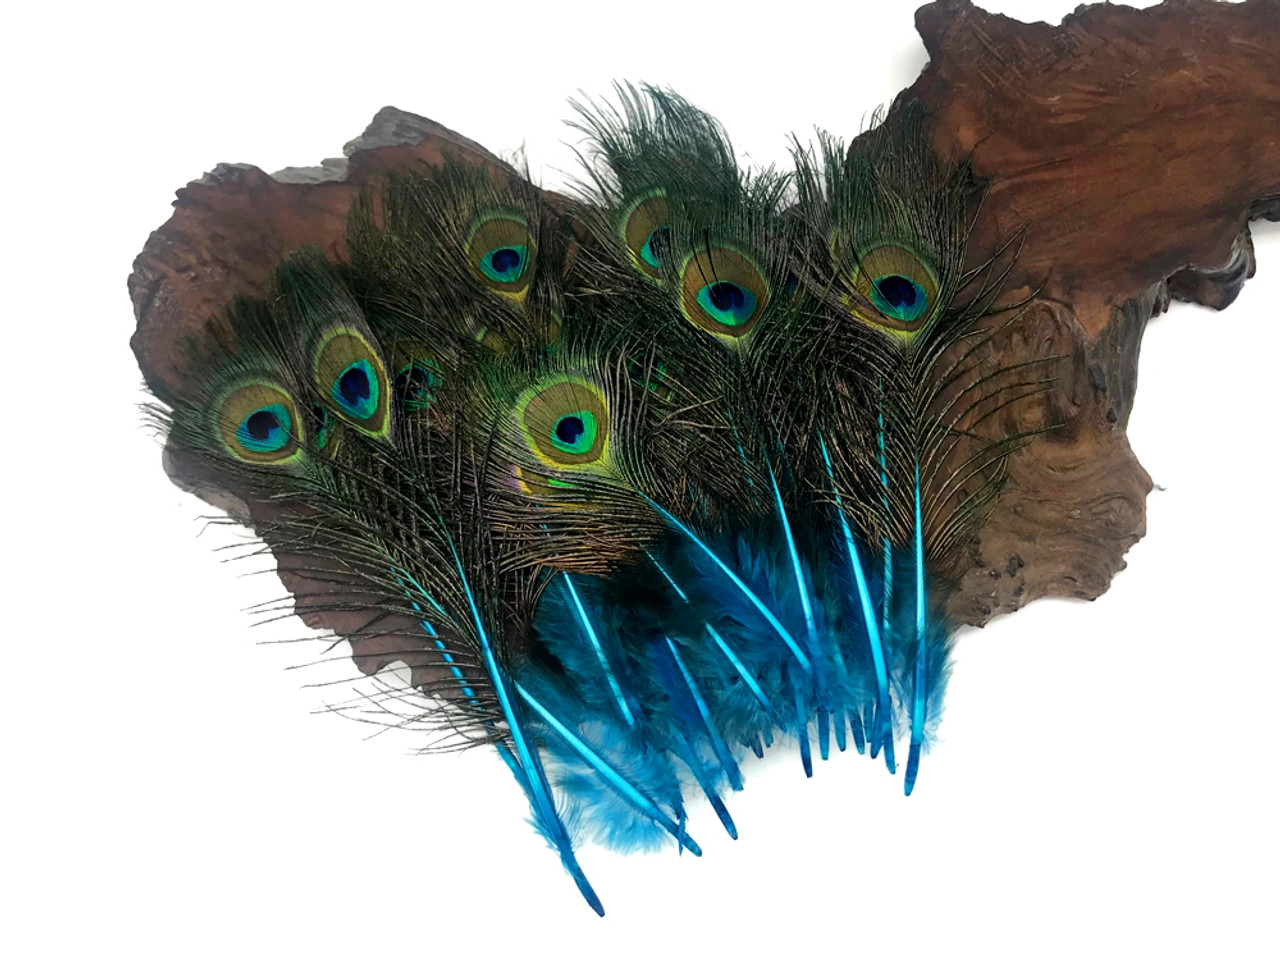 Artificial Feathers, L: 15 cm, W: 8 cm, Light Blue, 10 pc, 1 Pack